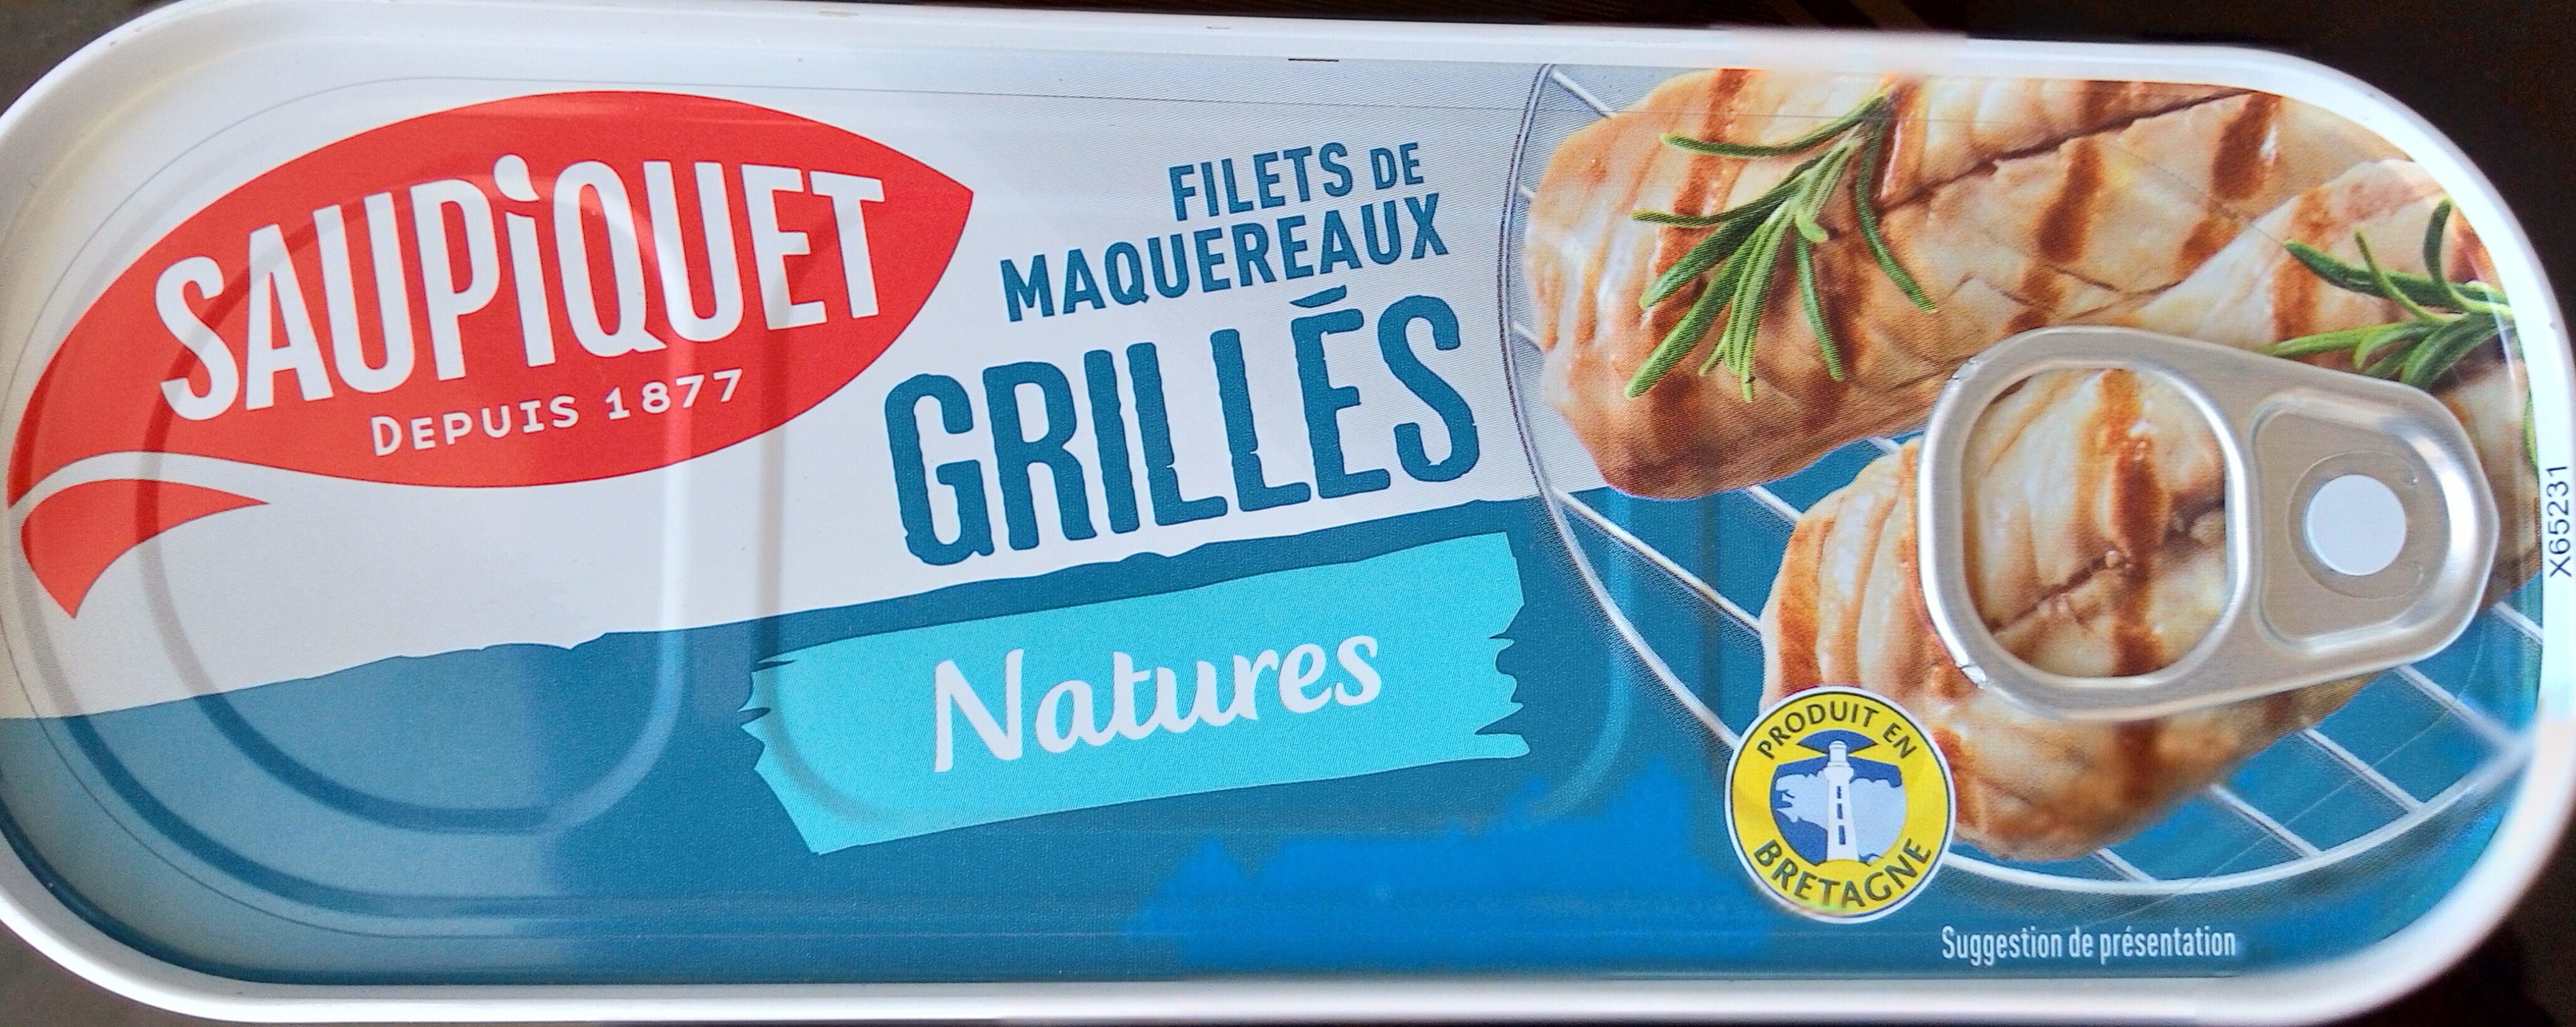 Filets de maquereaux  grillés nature - Producto - fr